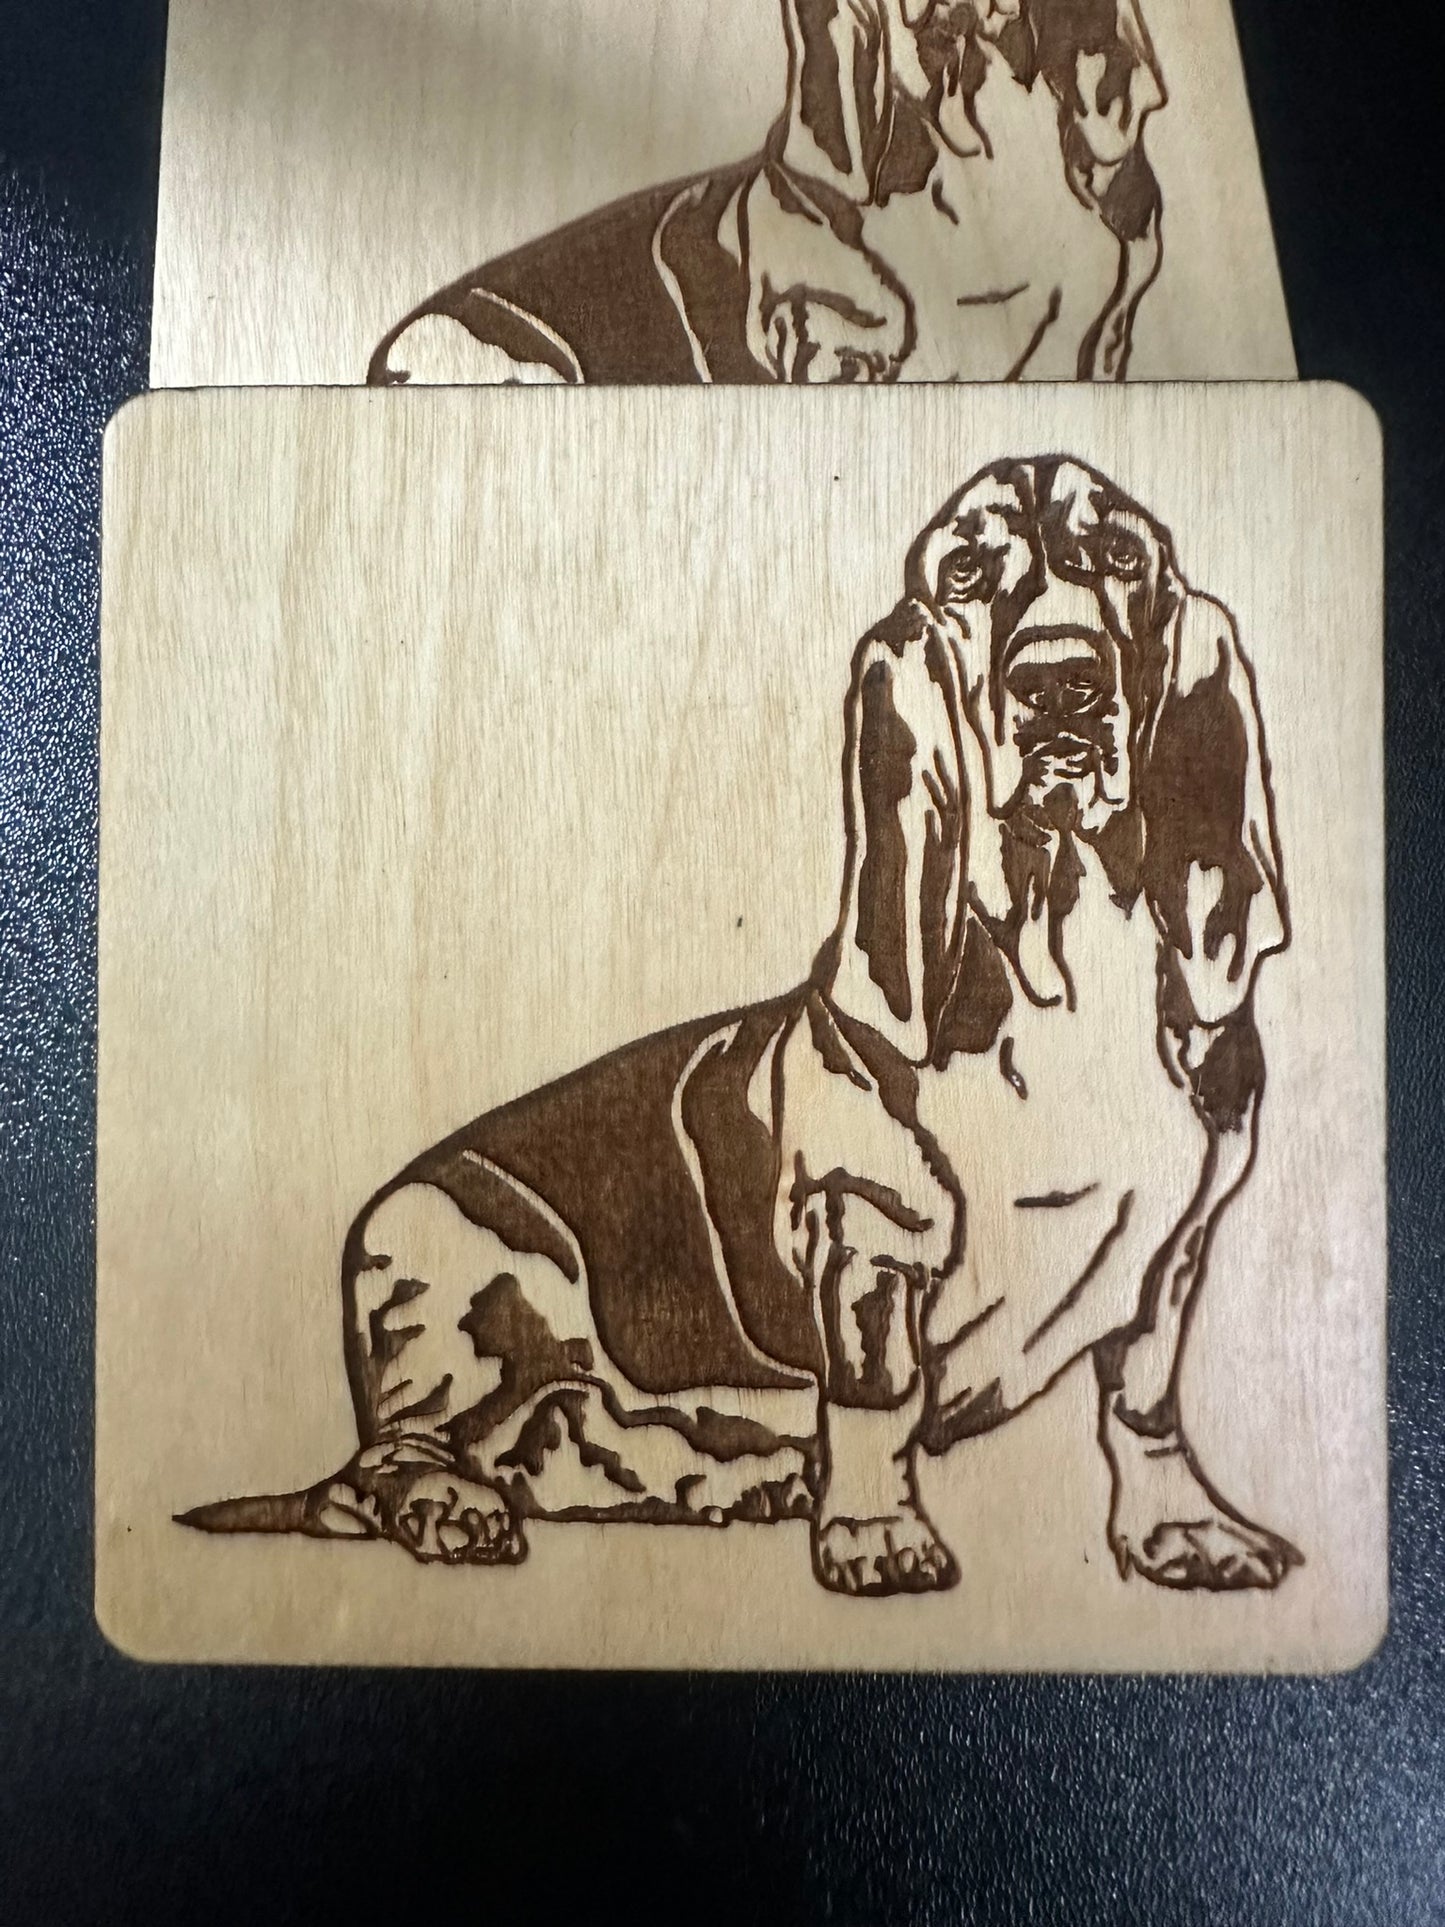 Basset Hounds Coasters- Laser Engraved- Pet owner Gift